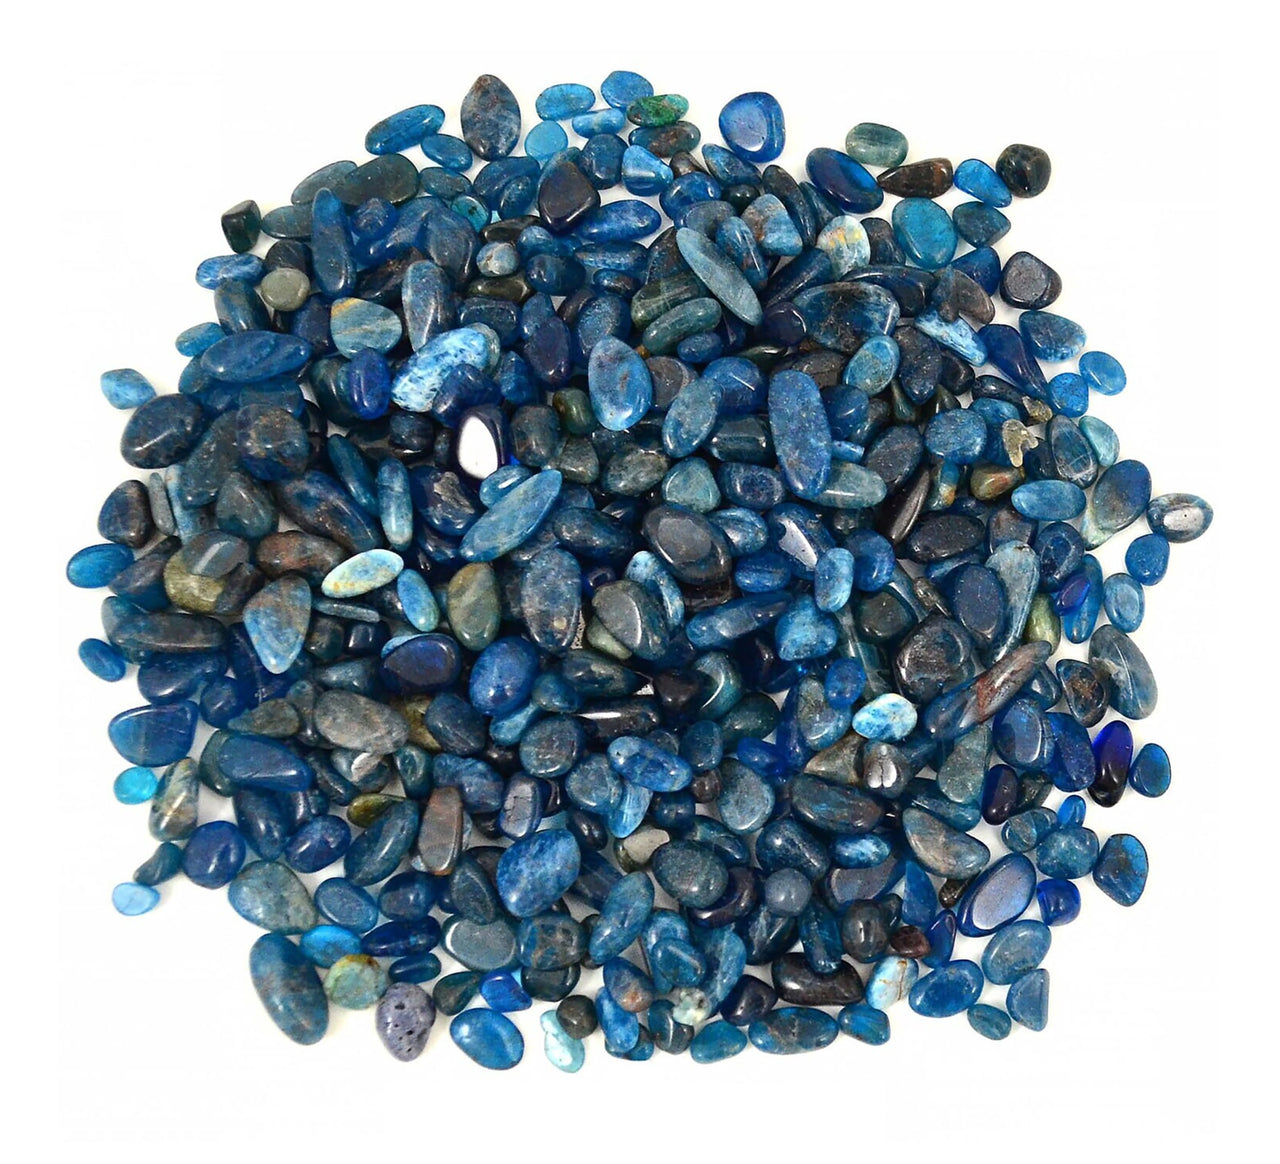 10 gm Mini APATITE Dark Blue (5-8 mm) Tumbled Stone Crystal Jewelry Arts & Crafts #BA01